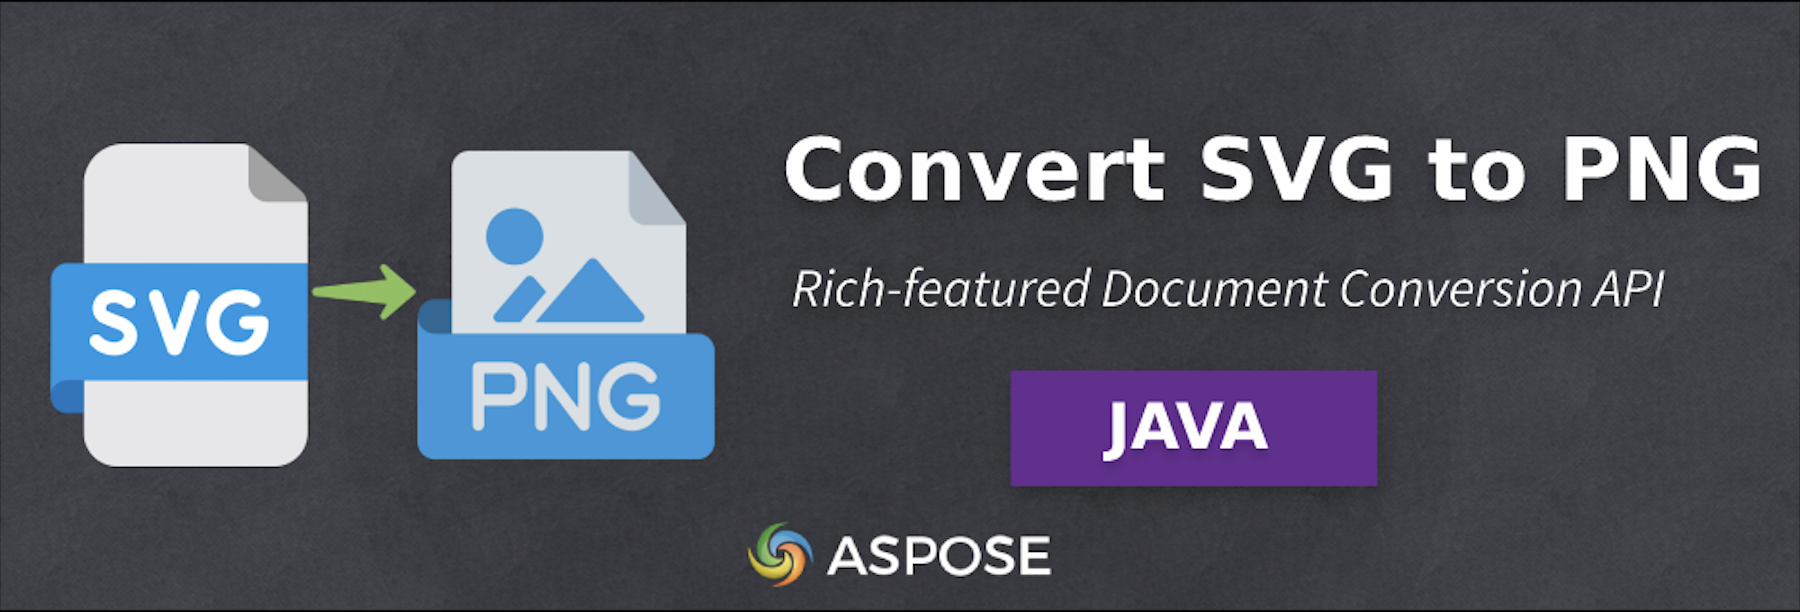 Convertir SVG a PNG en Java - Software de conversión de imágenes